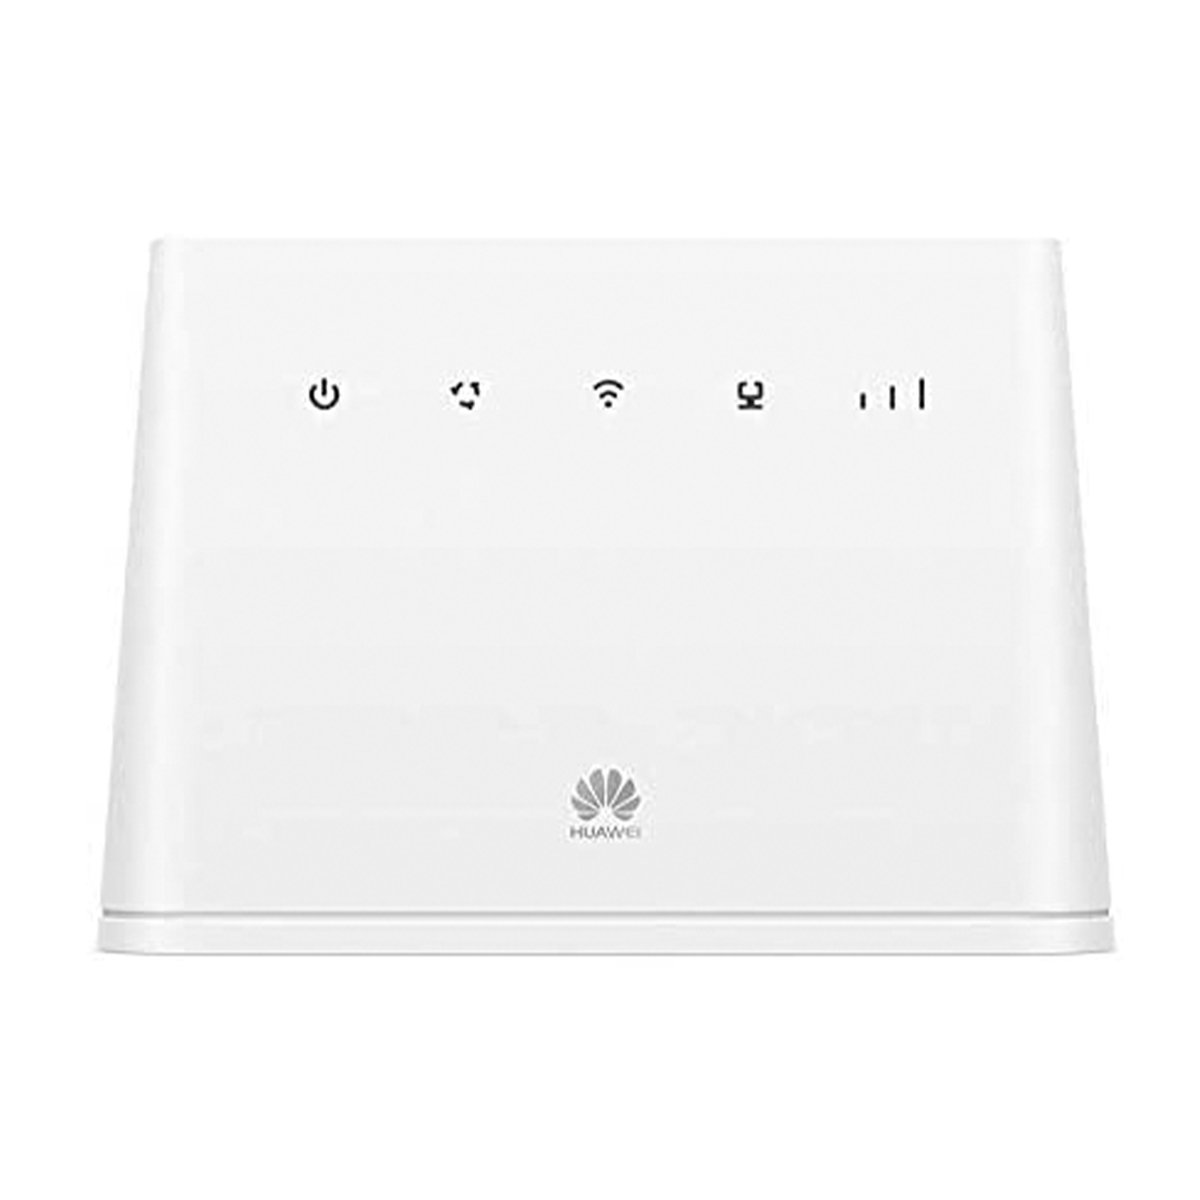 اشتري قم بشراء Huawei B311-221 150 Mbps 4G LTE Wireless Router White Online at Best Price من الموقع - من لولو هايبر ماركت W/L Routers في الامارات